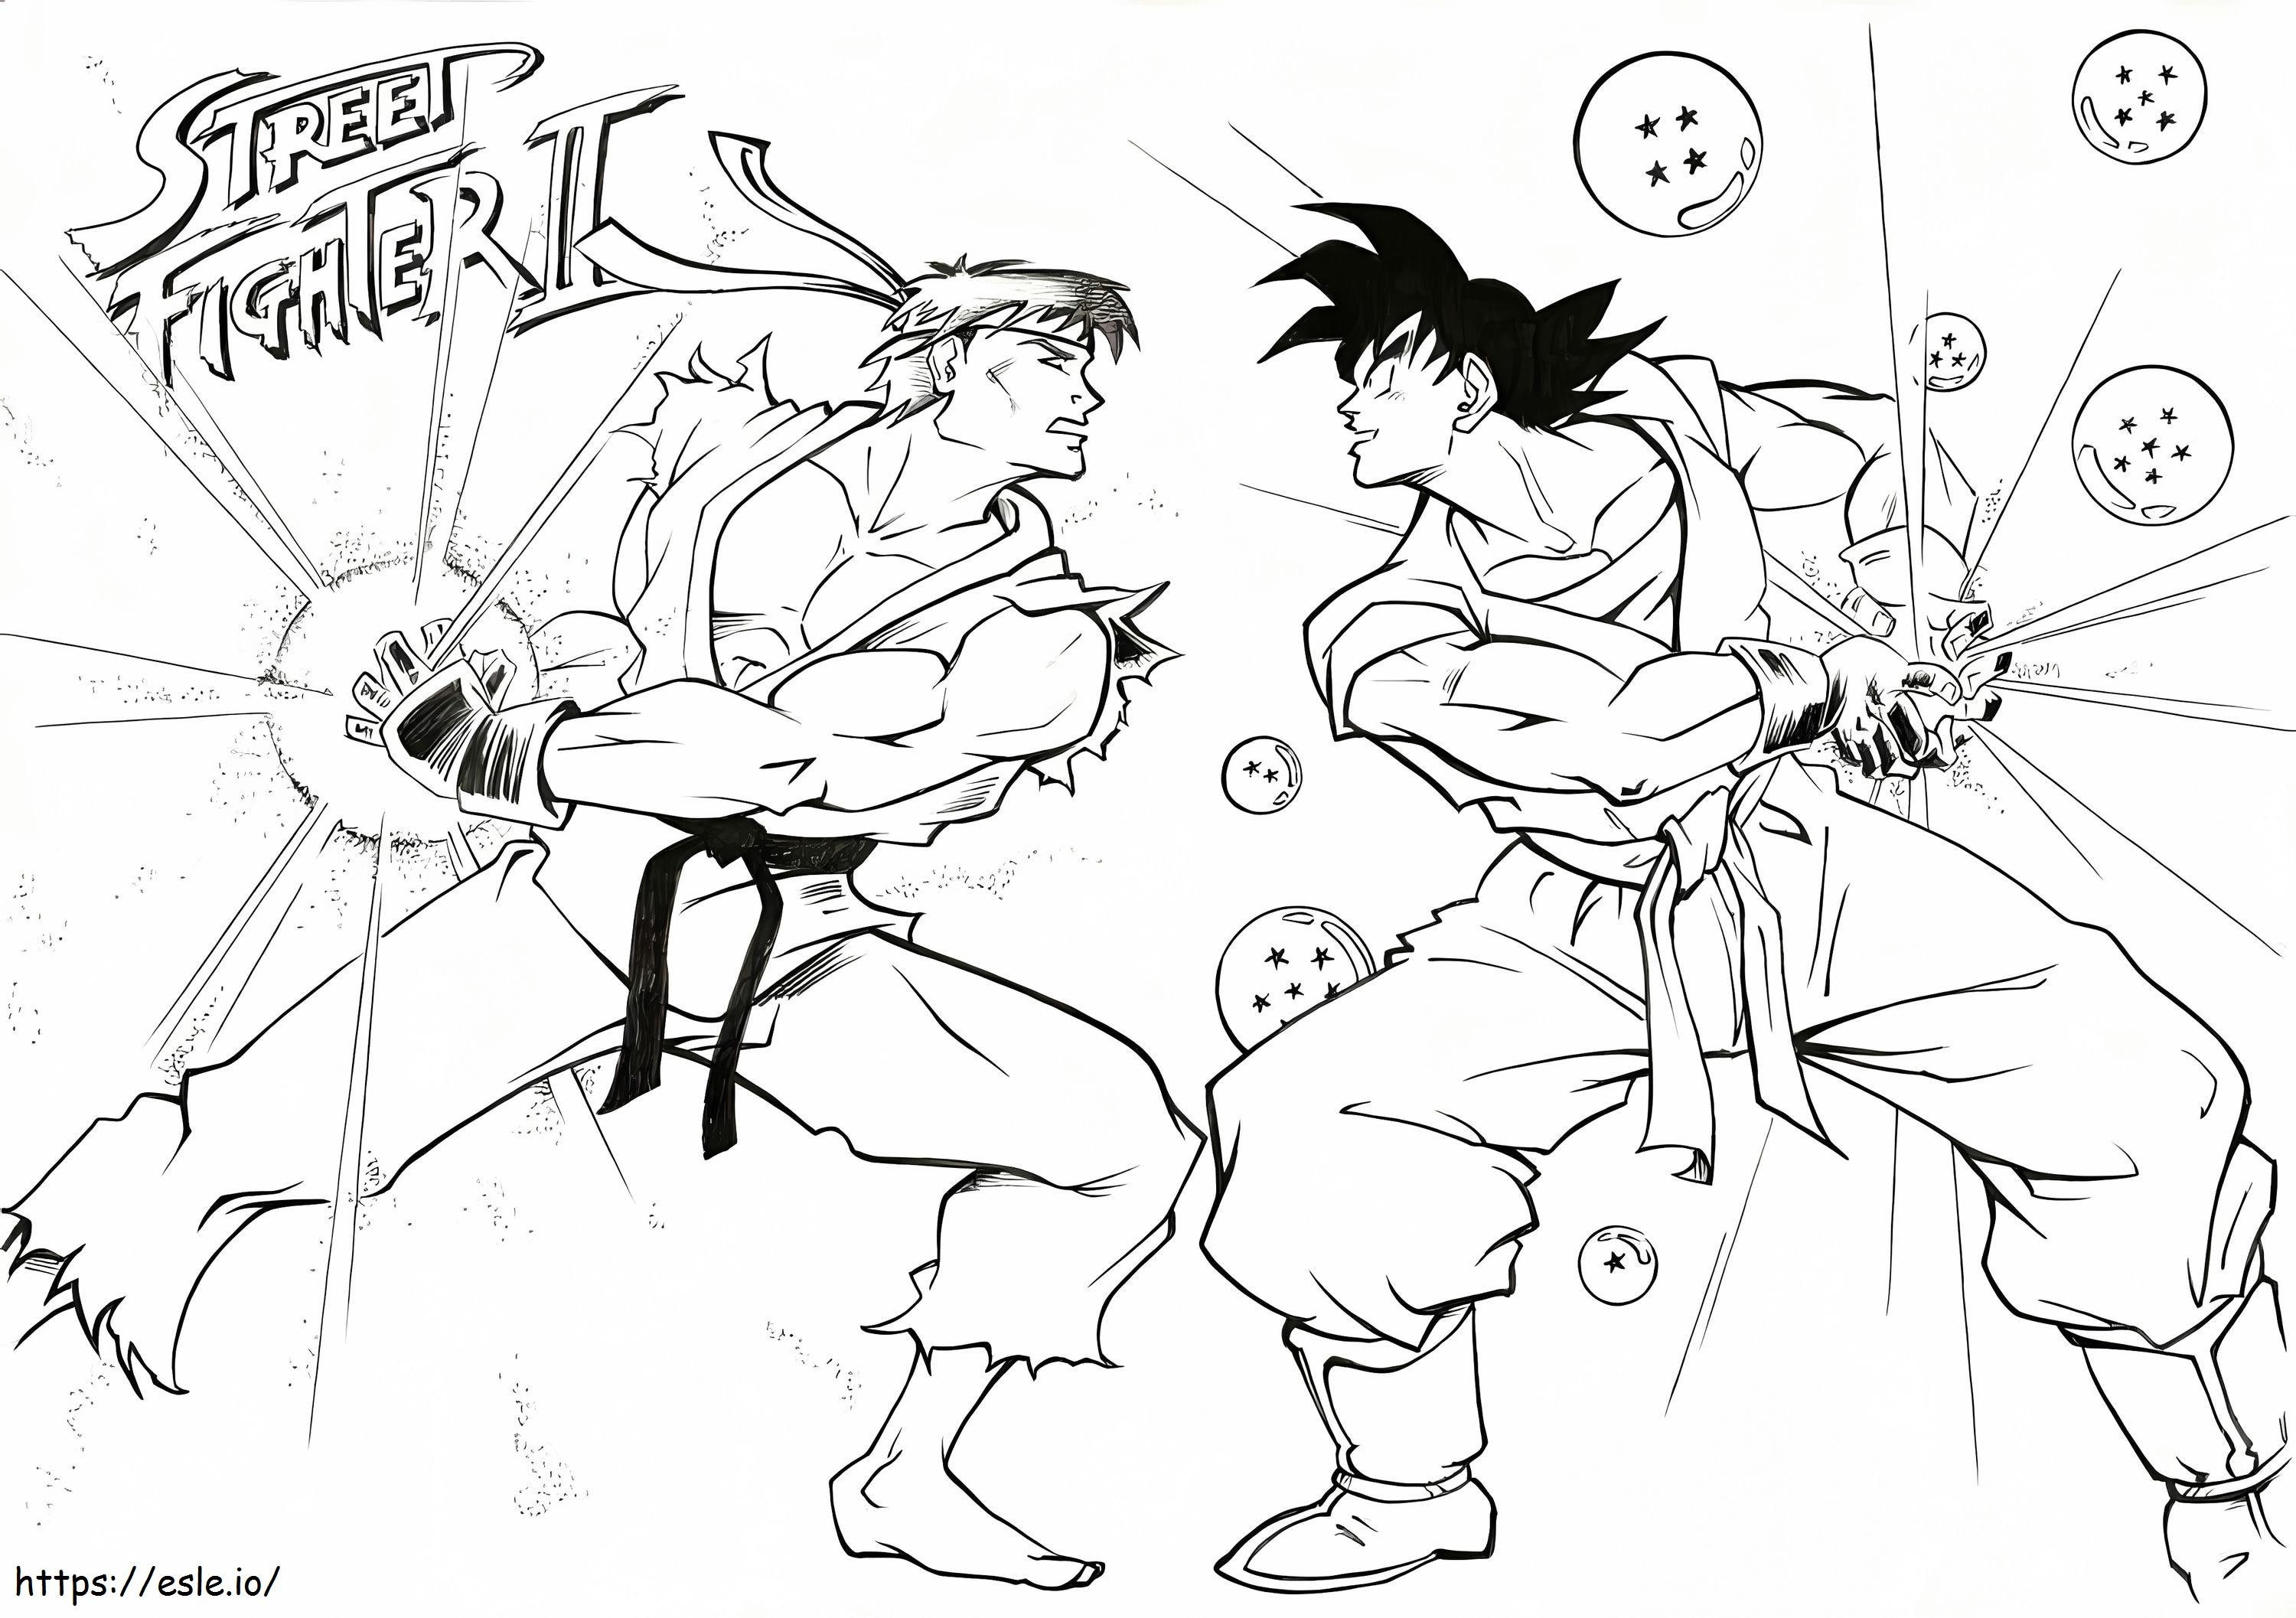 Ryu versus Goku kleurplaat kleurplaat